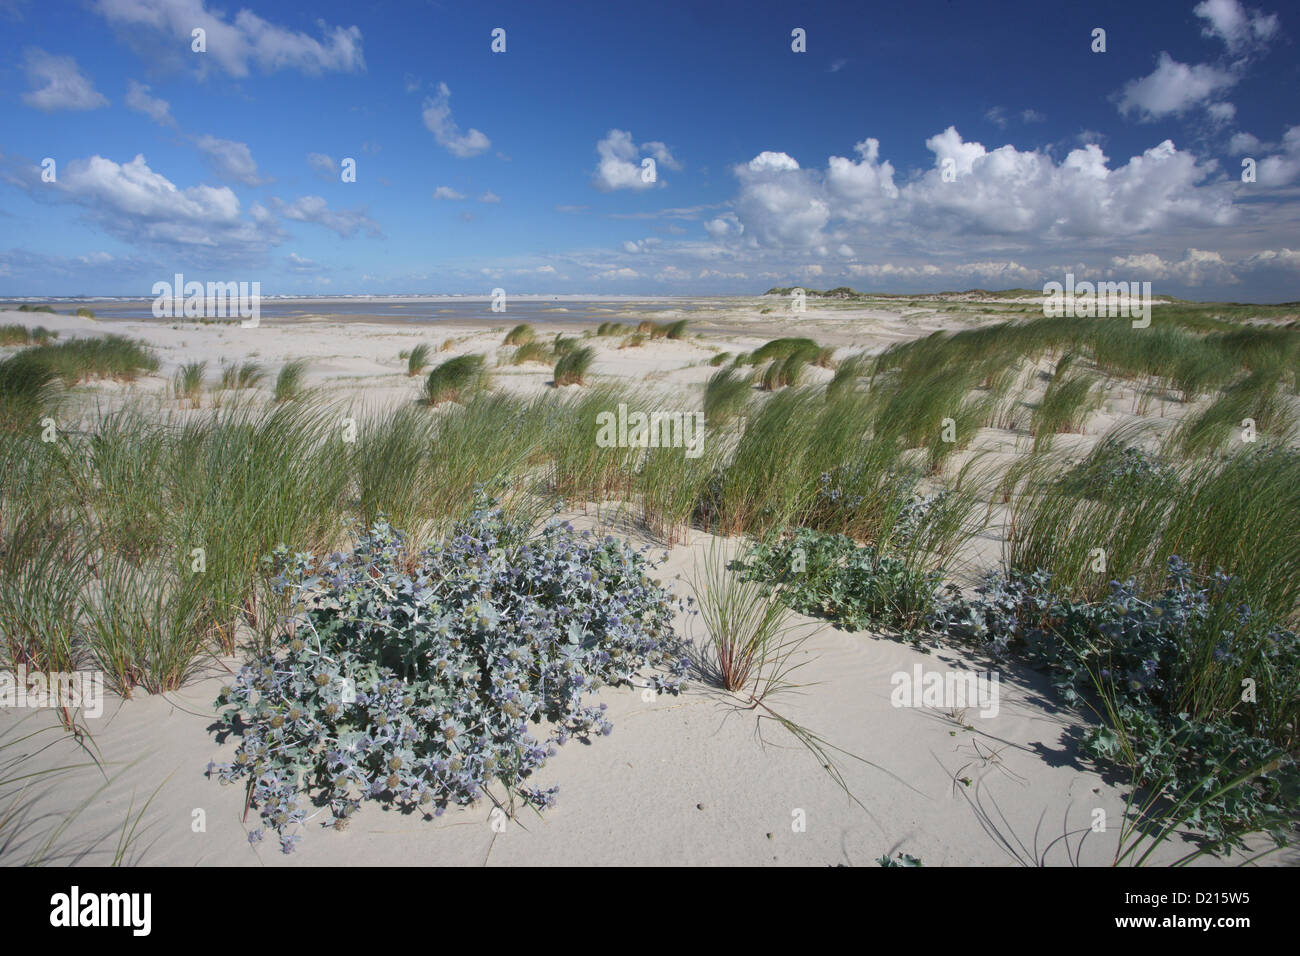 Meer-Holly auf den Sanddünen, Insel Spiekeroog, zu senken, sächsischen Nationalpark Wattenmeer, Ostfriesischen Inseln, Niedersachsen, Deutschland Stockfoto